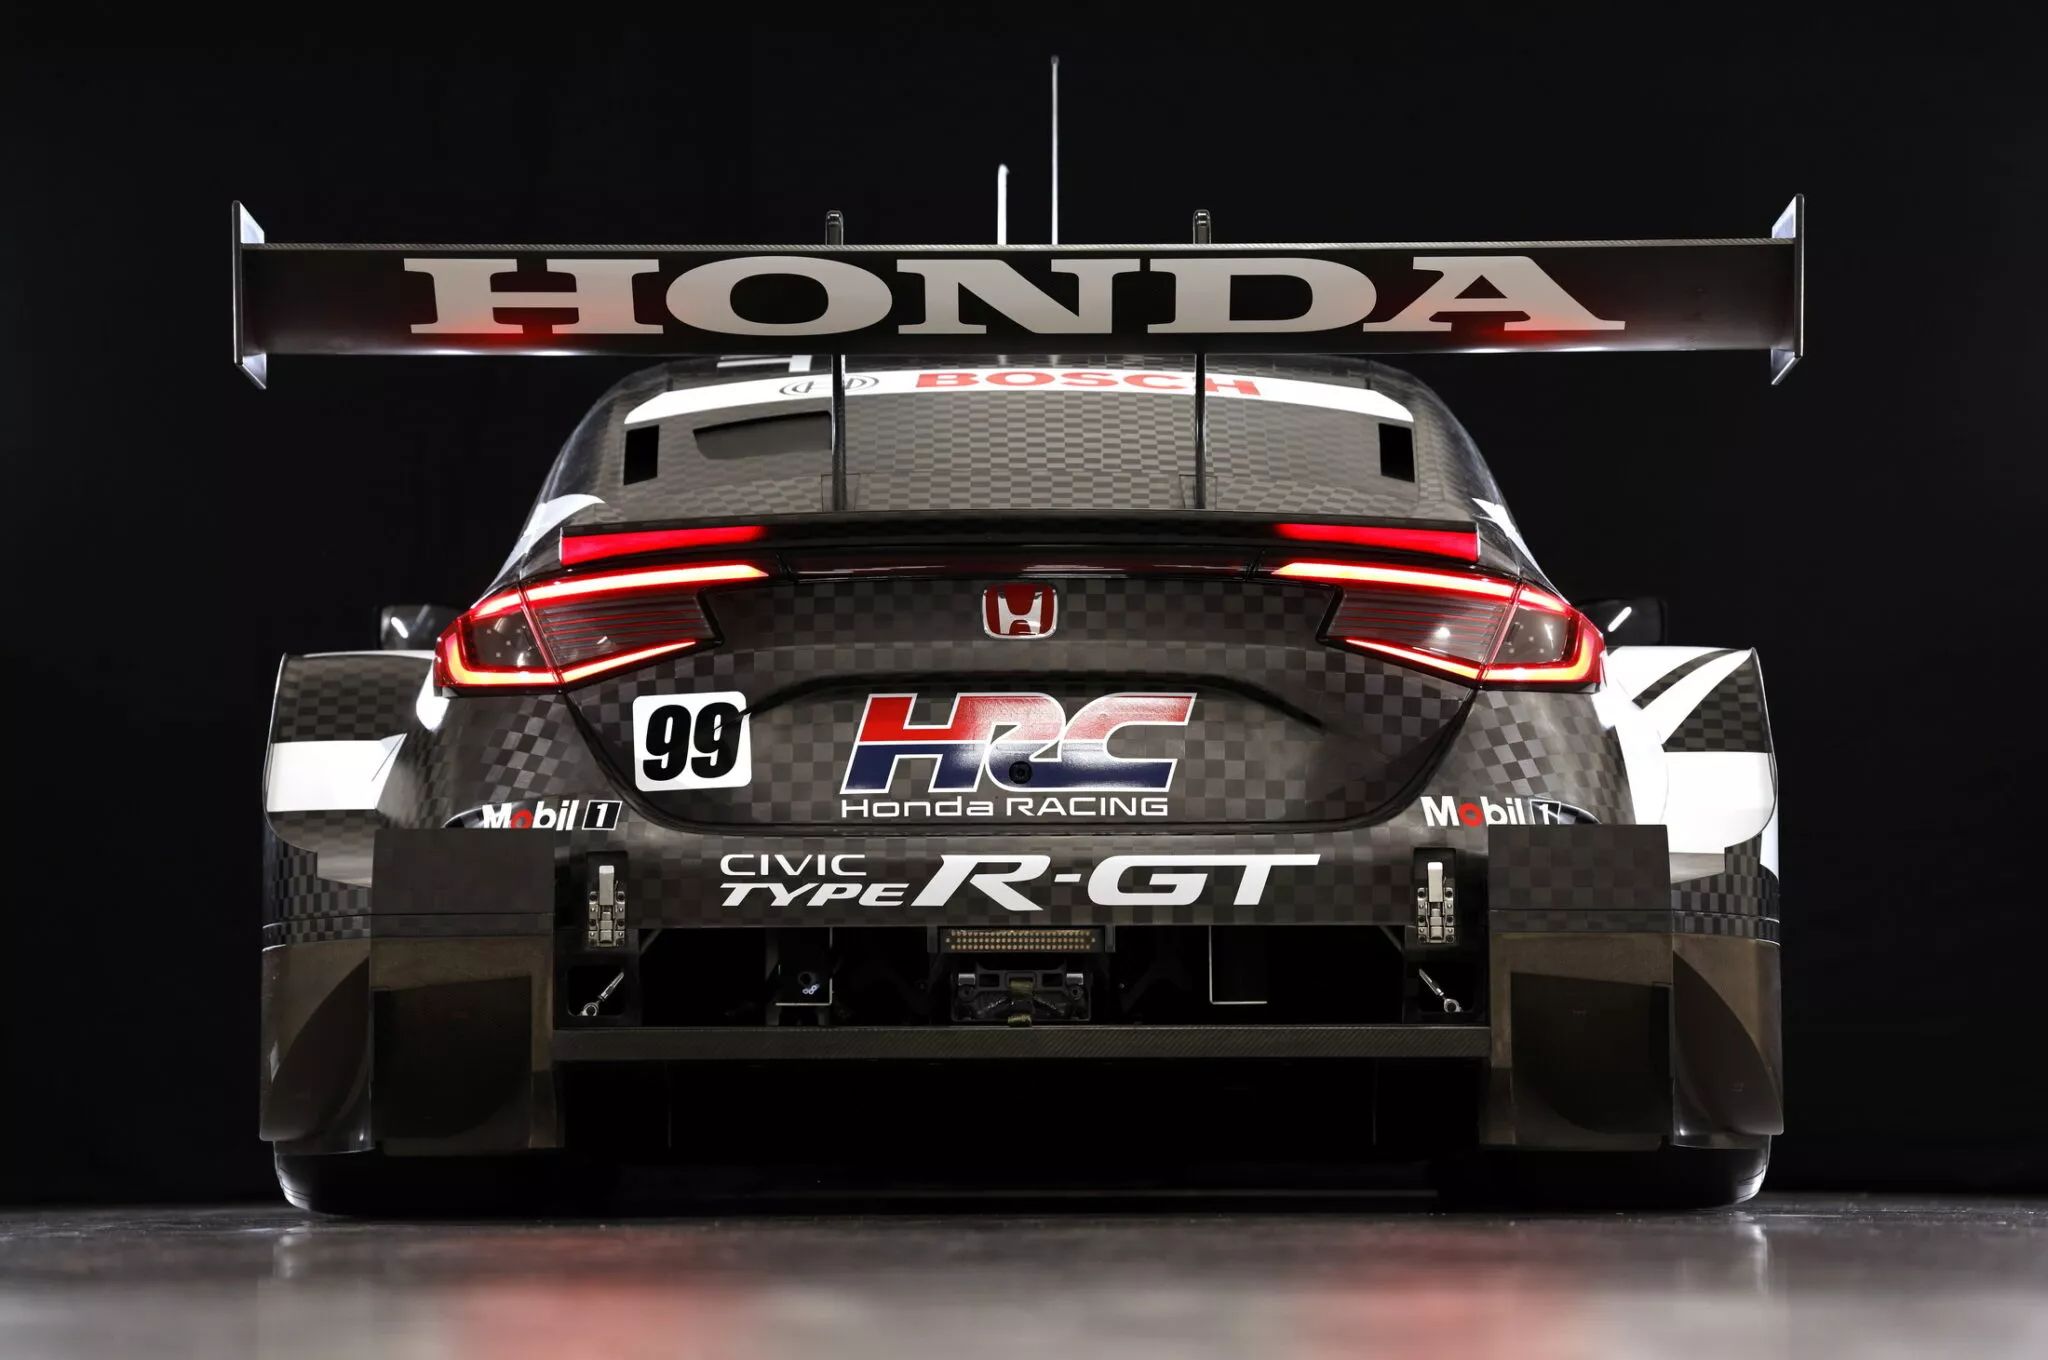 هوندا سيفيك تايب ار GT الجديدة المخصصة للحلبات تظهر بالشكل النهائي قبل مشاركتها في السباقات 2